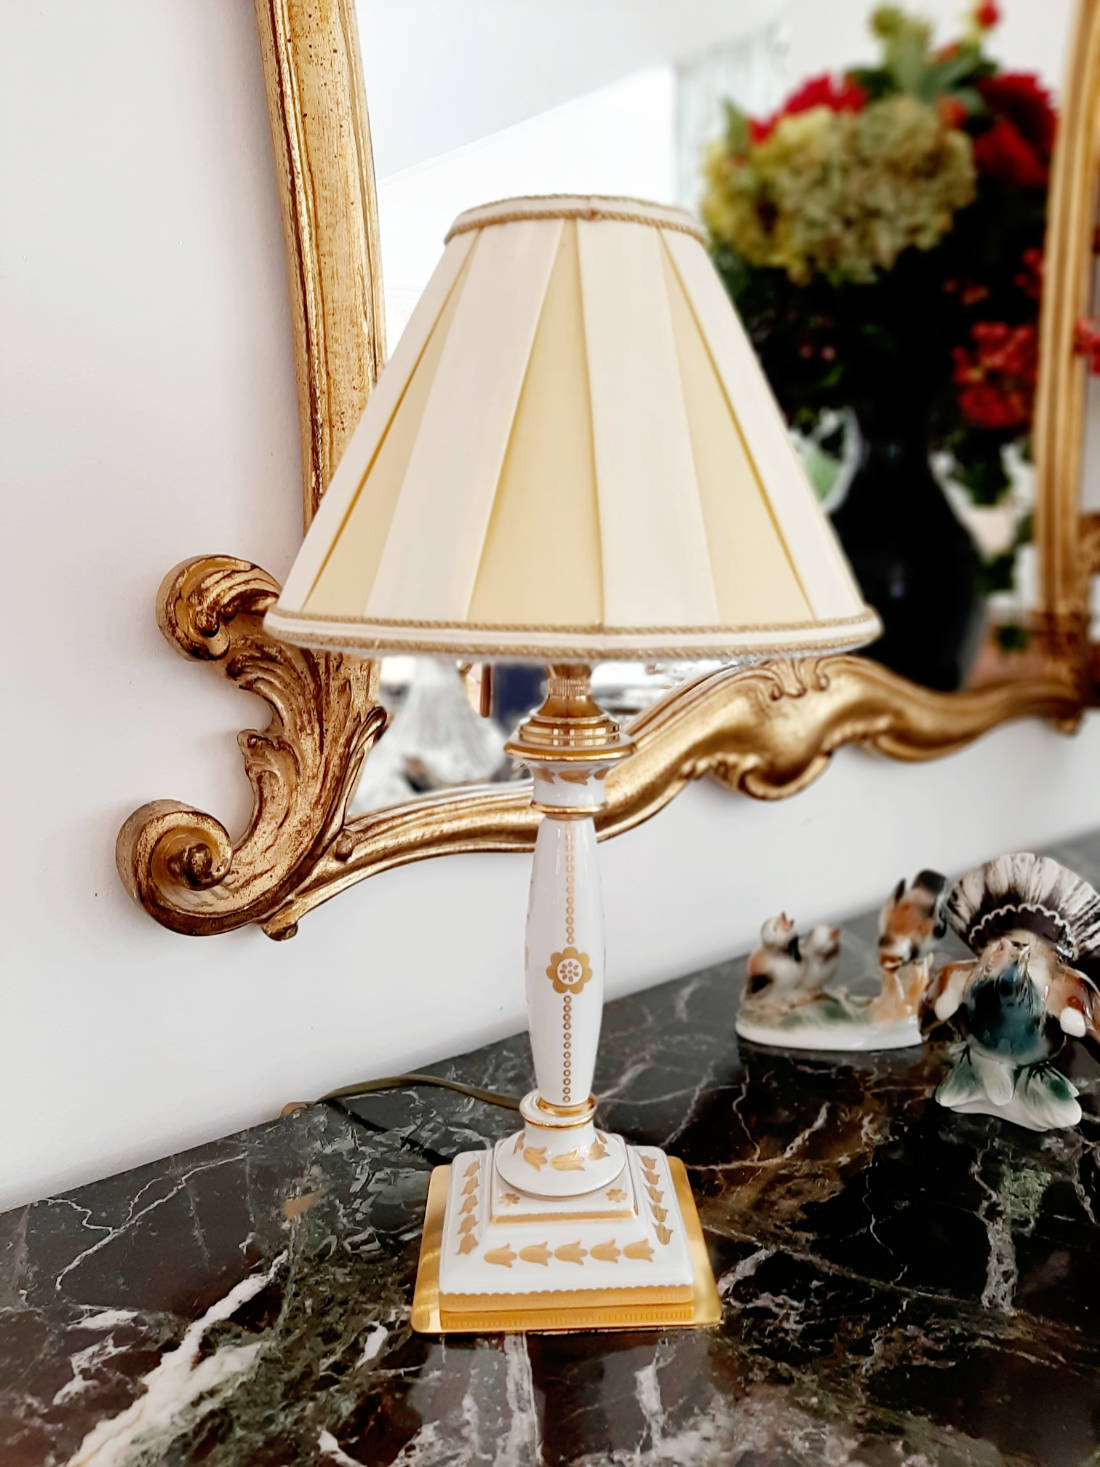 Kleine Tischlampe, in weiß, von Mangani, mit Goldbemalung, gebraucht, Frontalansicht.